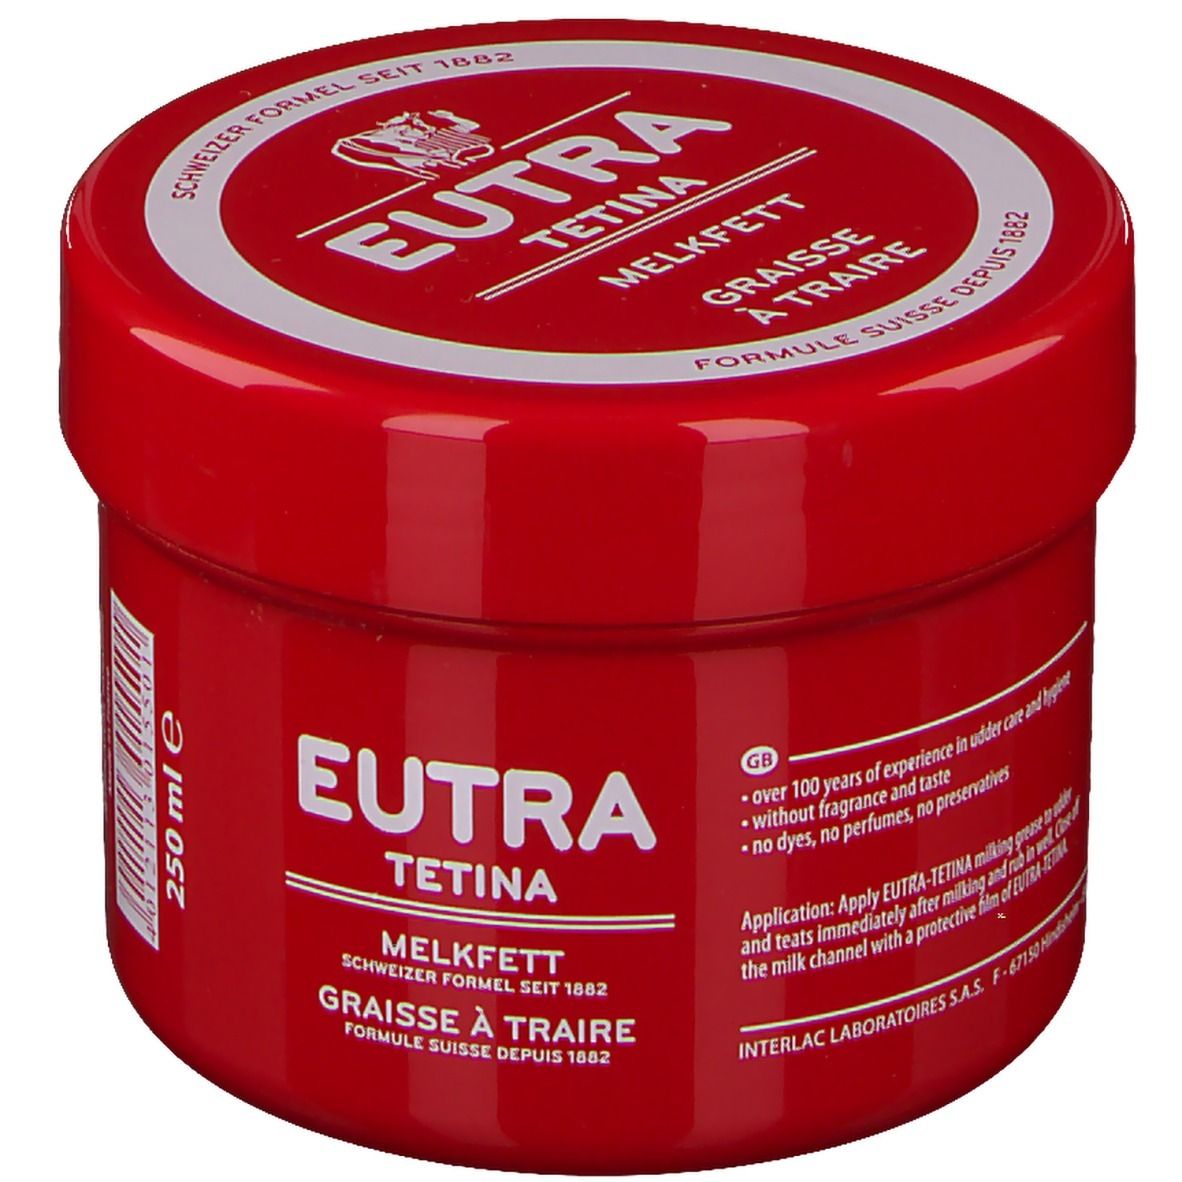 Melkfett Eutra Tetina